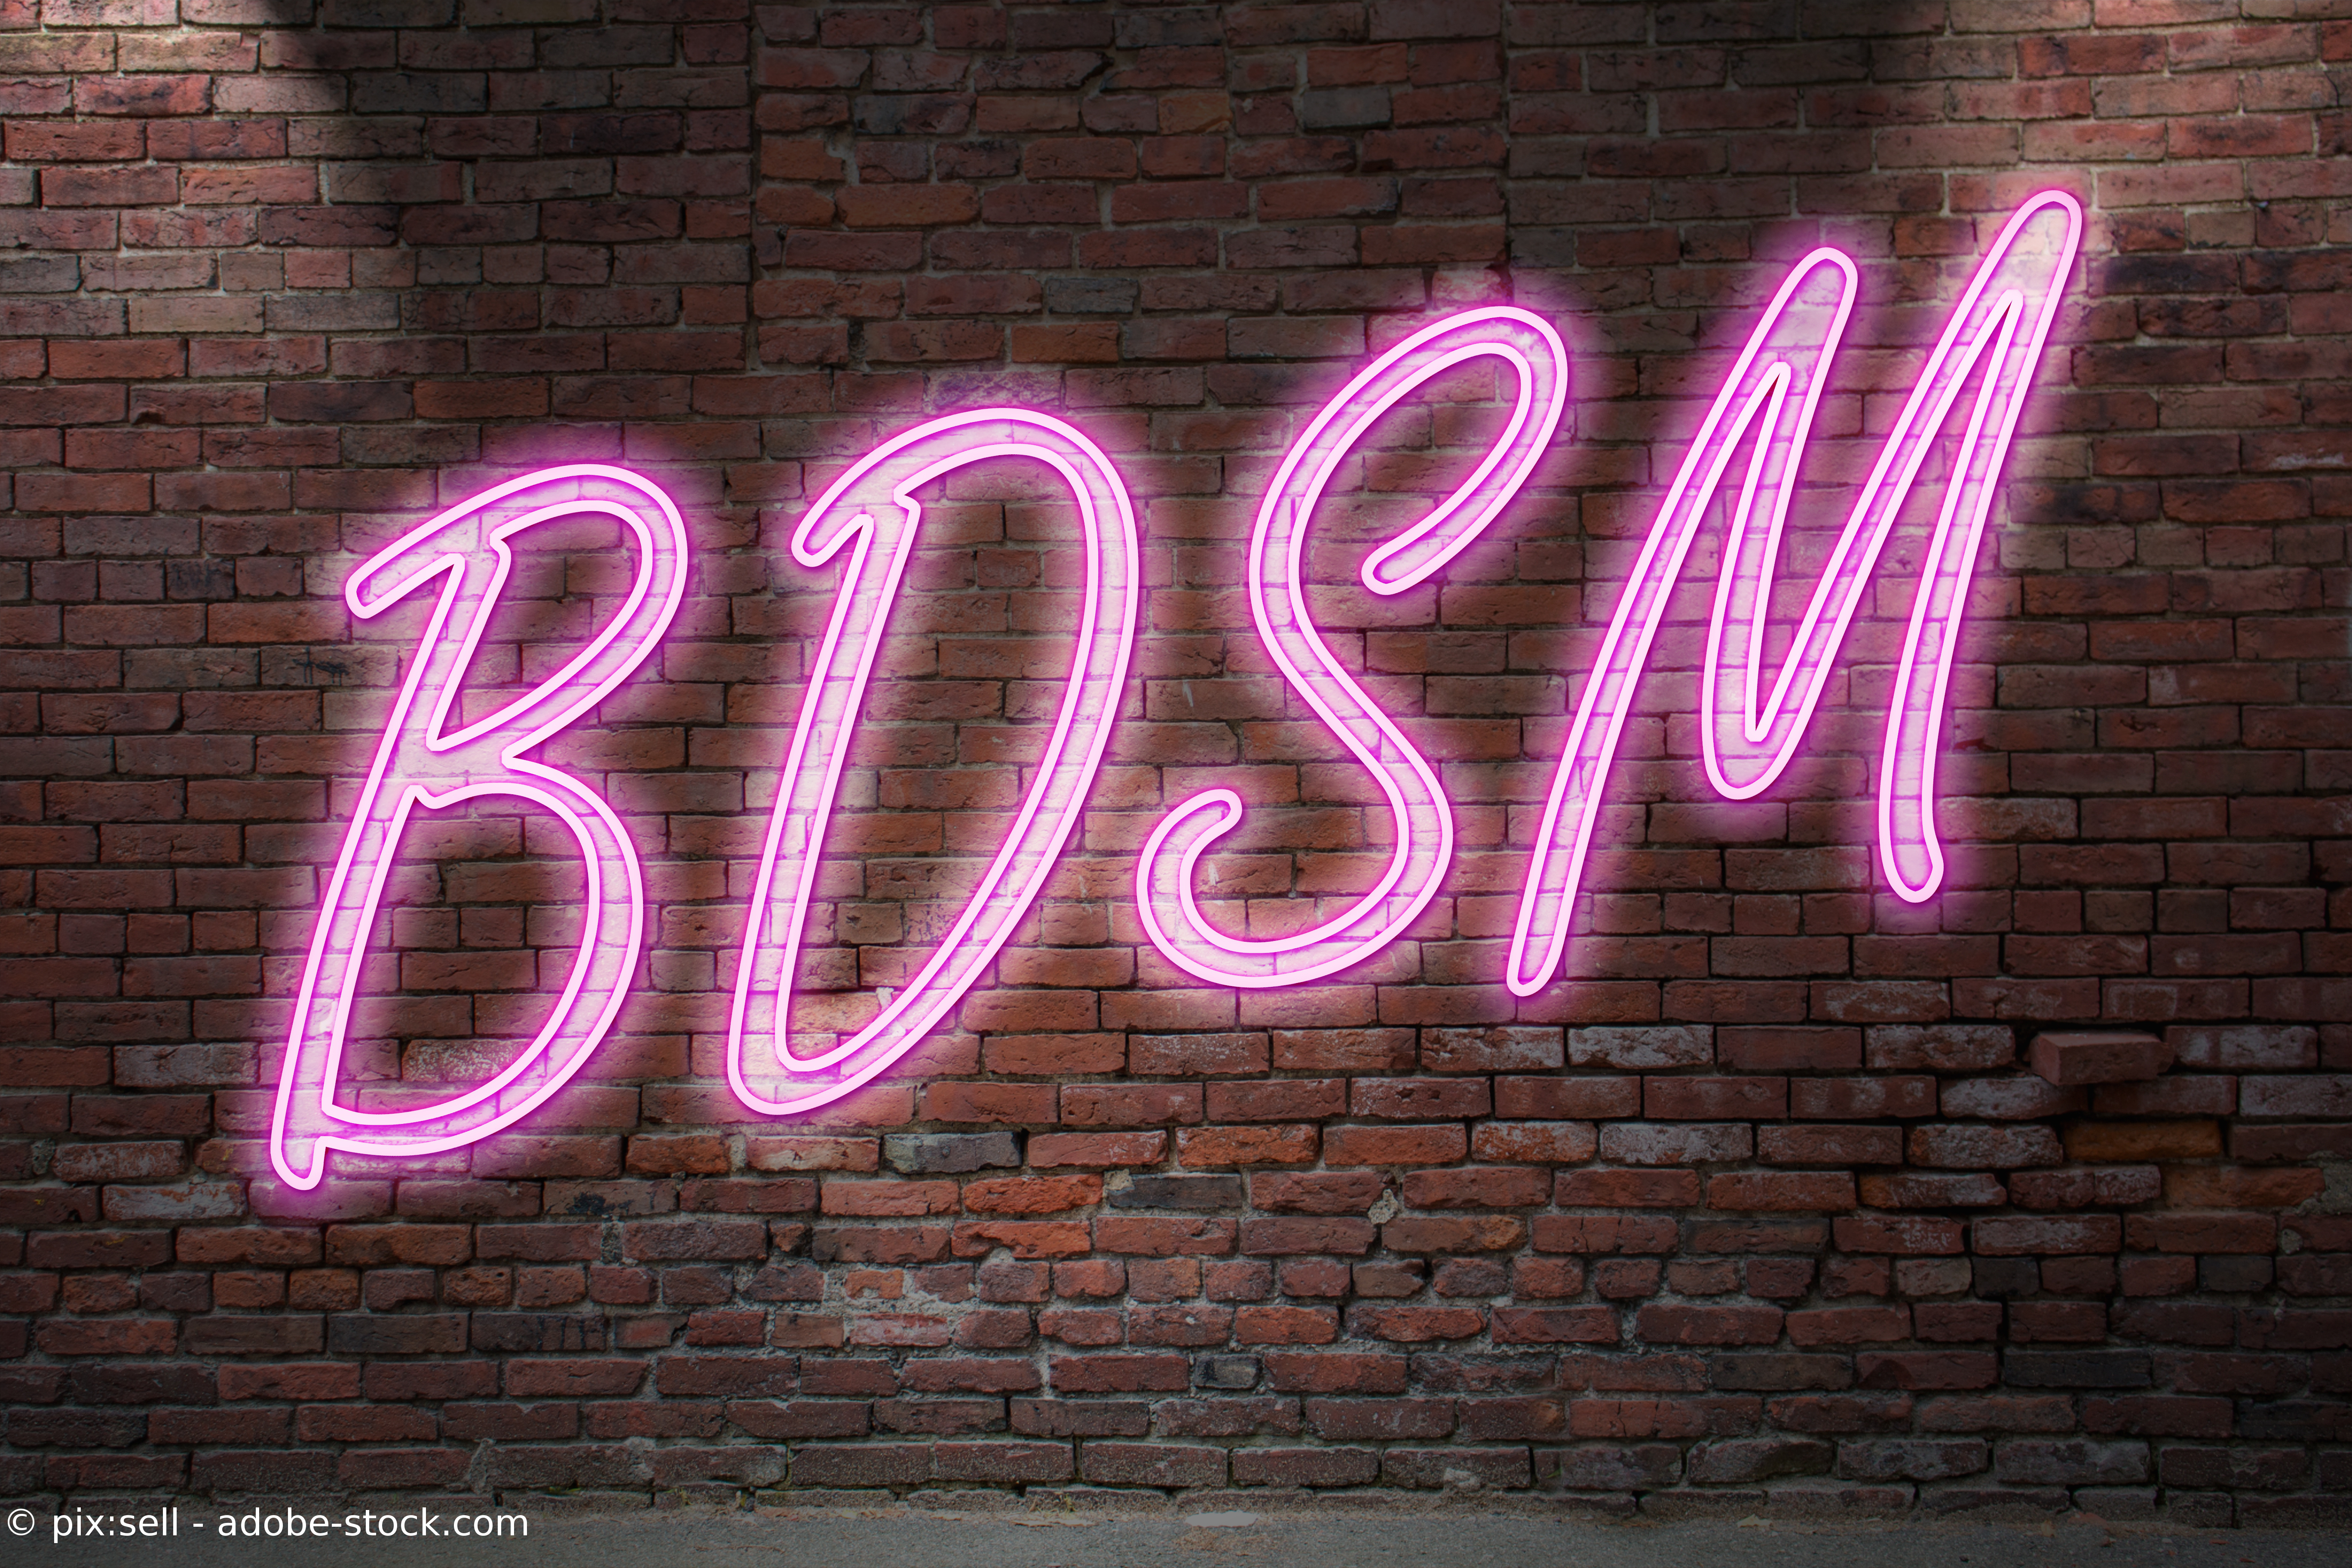 Eine Ziegelwand mit der Aufschrift "BDSM".